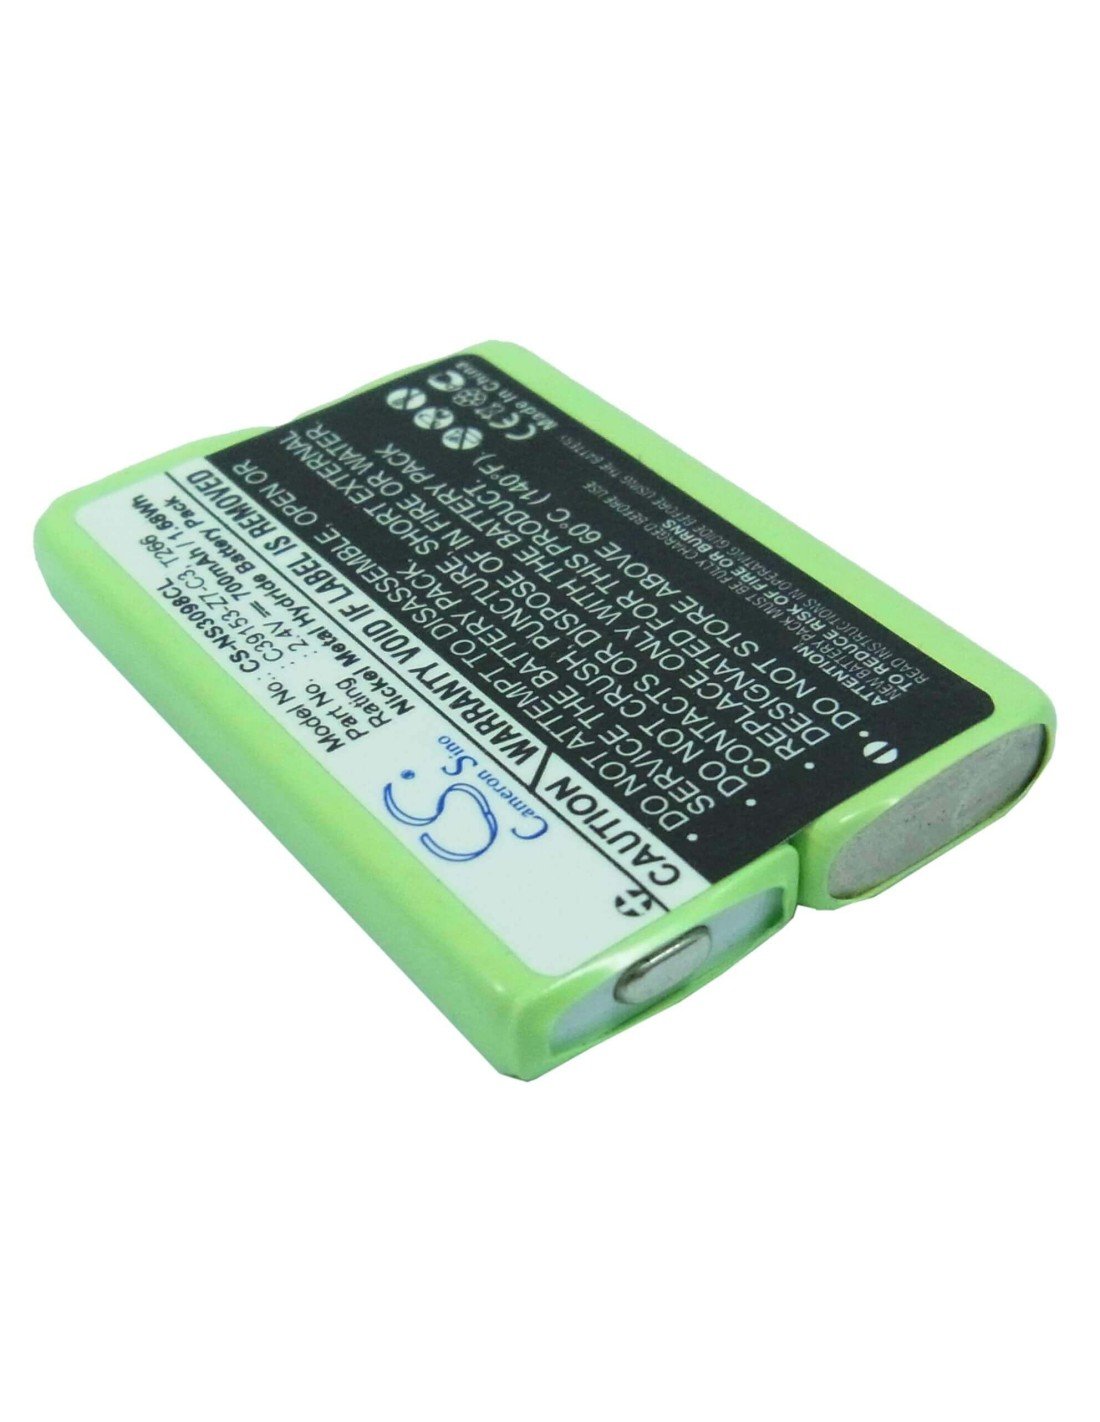 Battery for Detewe, 260 Isdn, Eurix 250, 2.4V, 700mAh - 1.68Wh